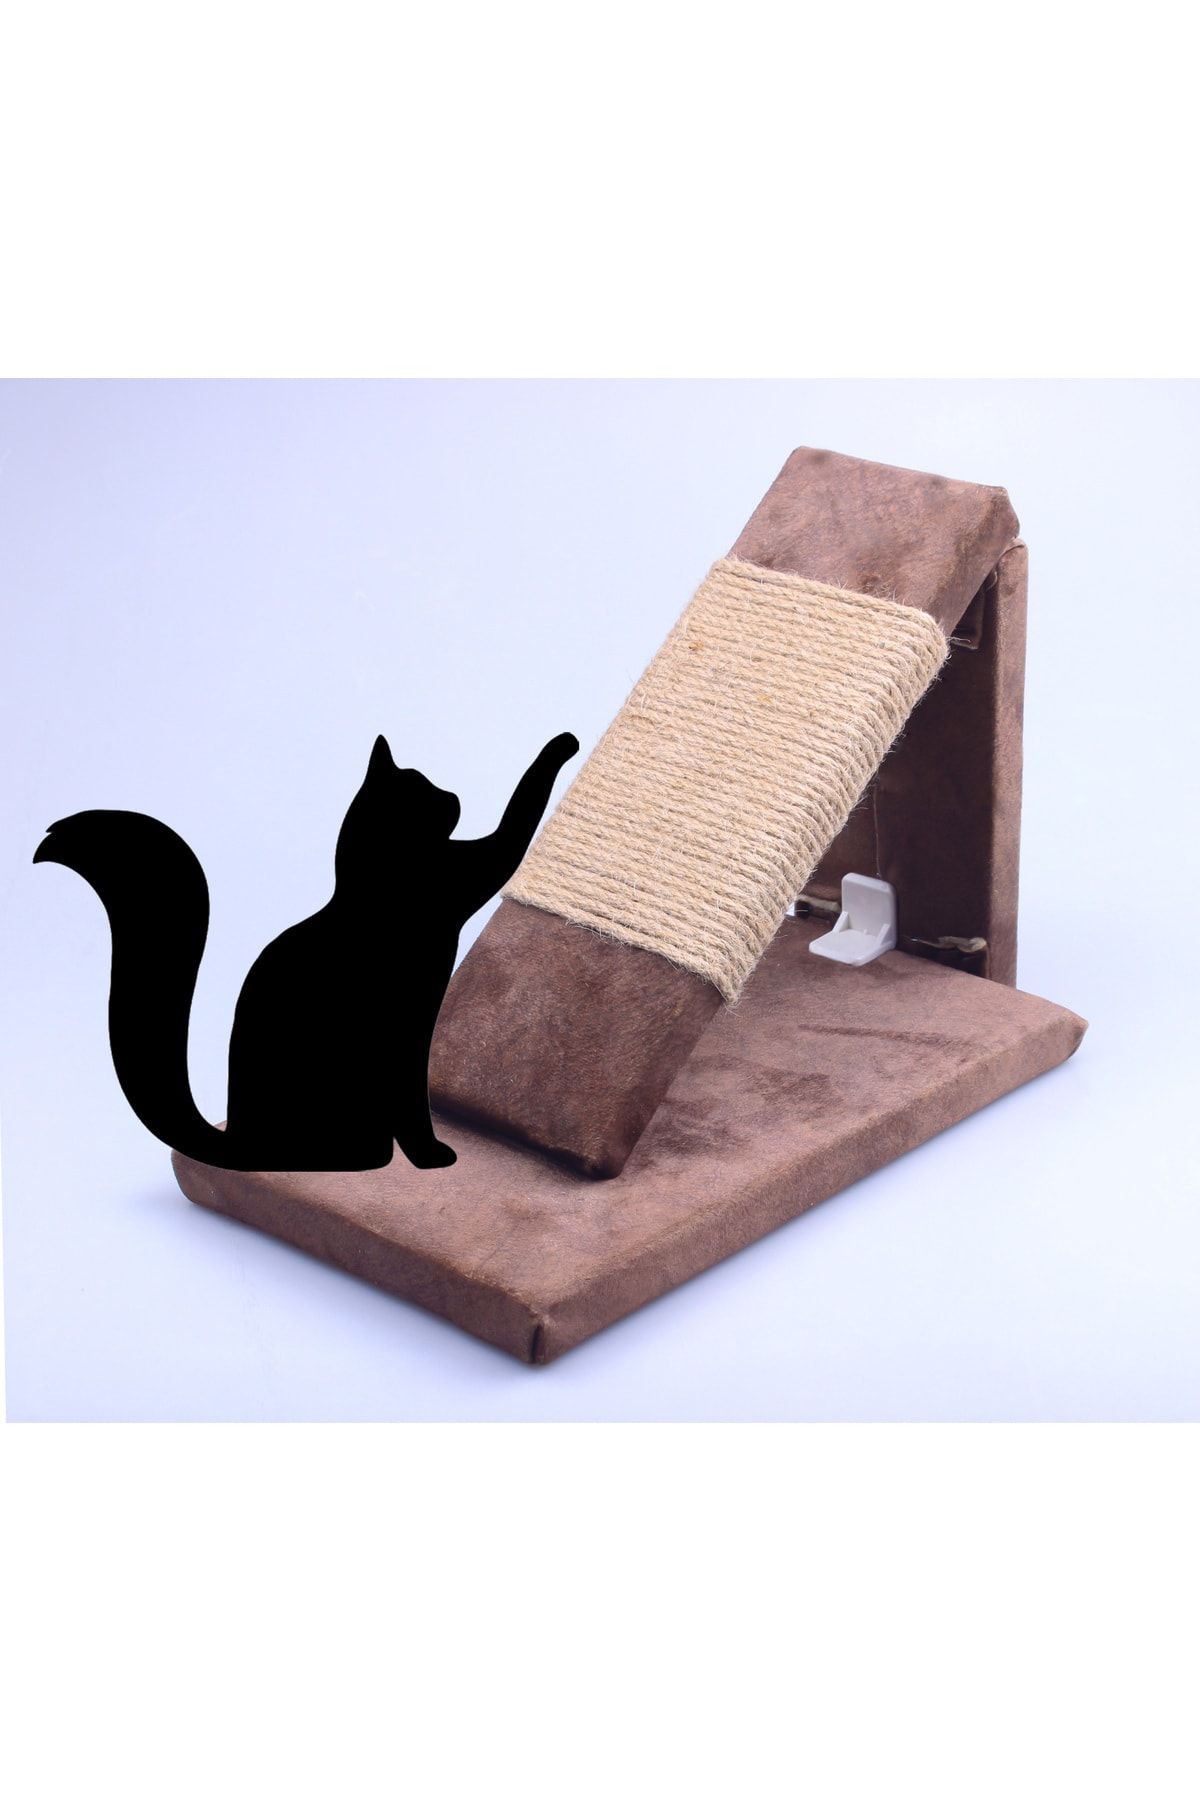 AlaPet Kedi Tırmalama Rampası, Rampa Şeklinde Kedi Tırmalama Tahtası (6MM Jut Halat)